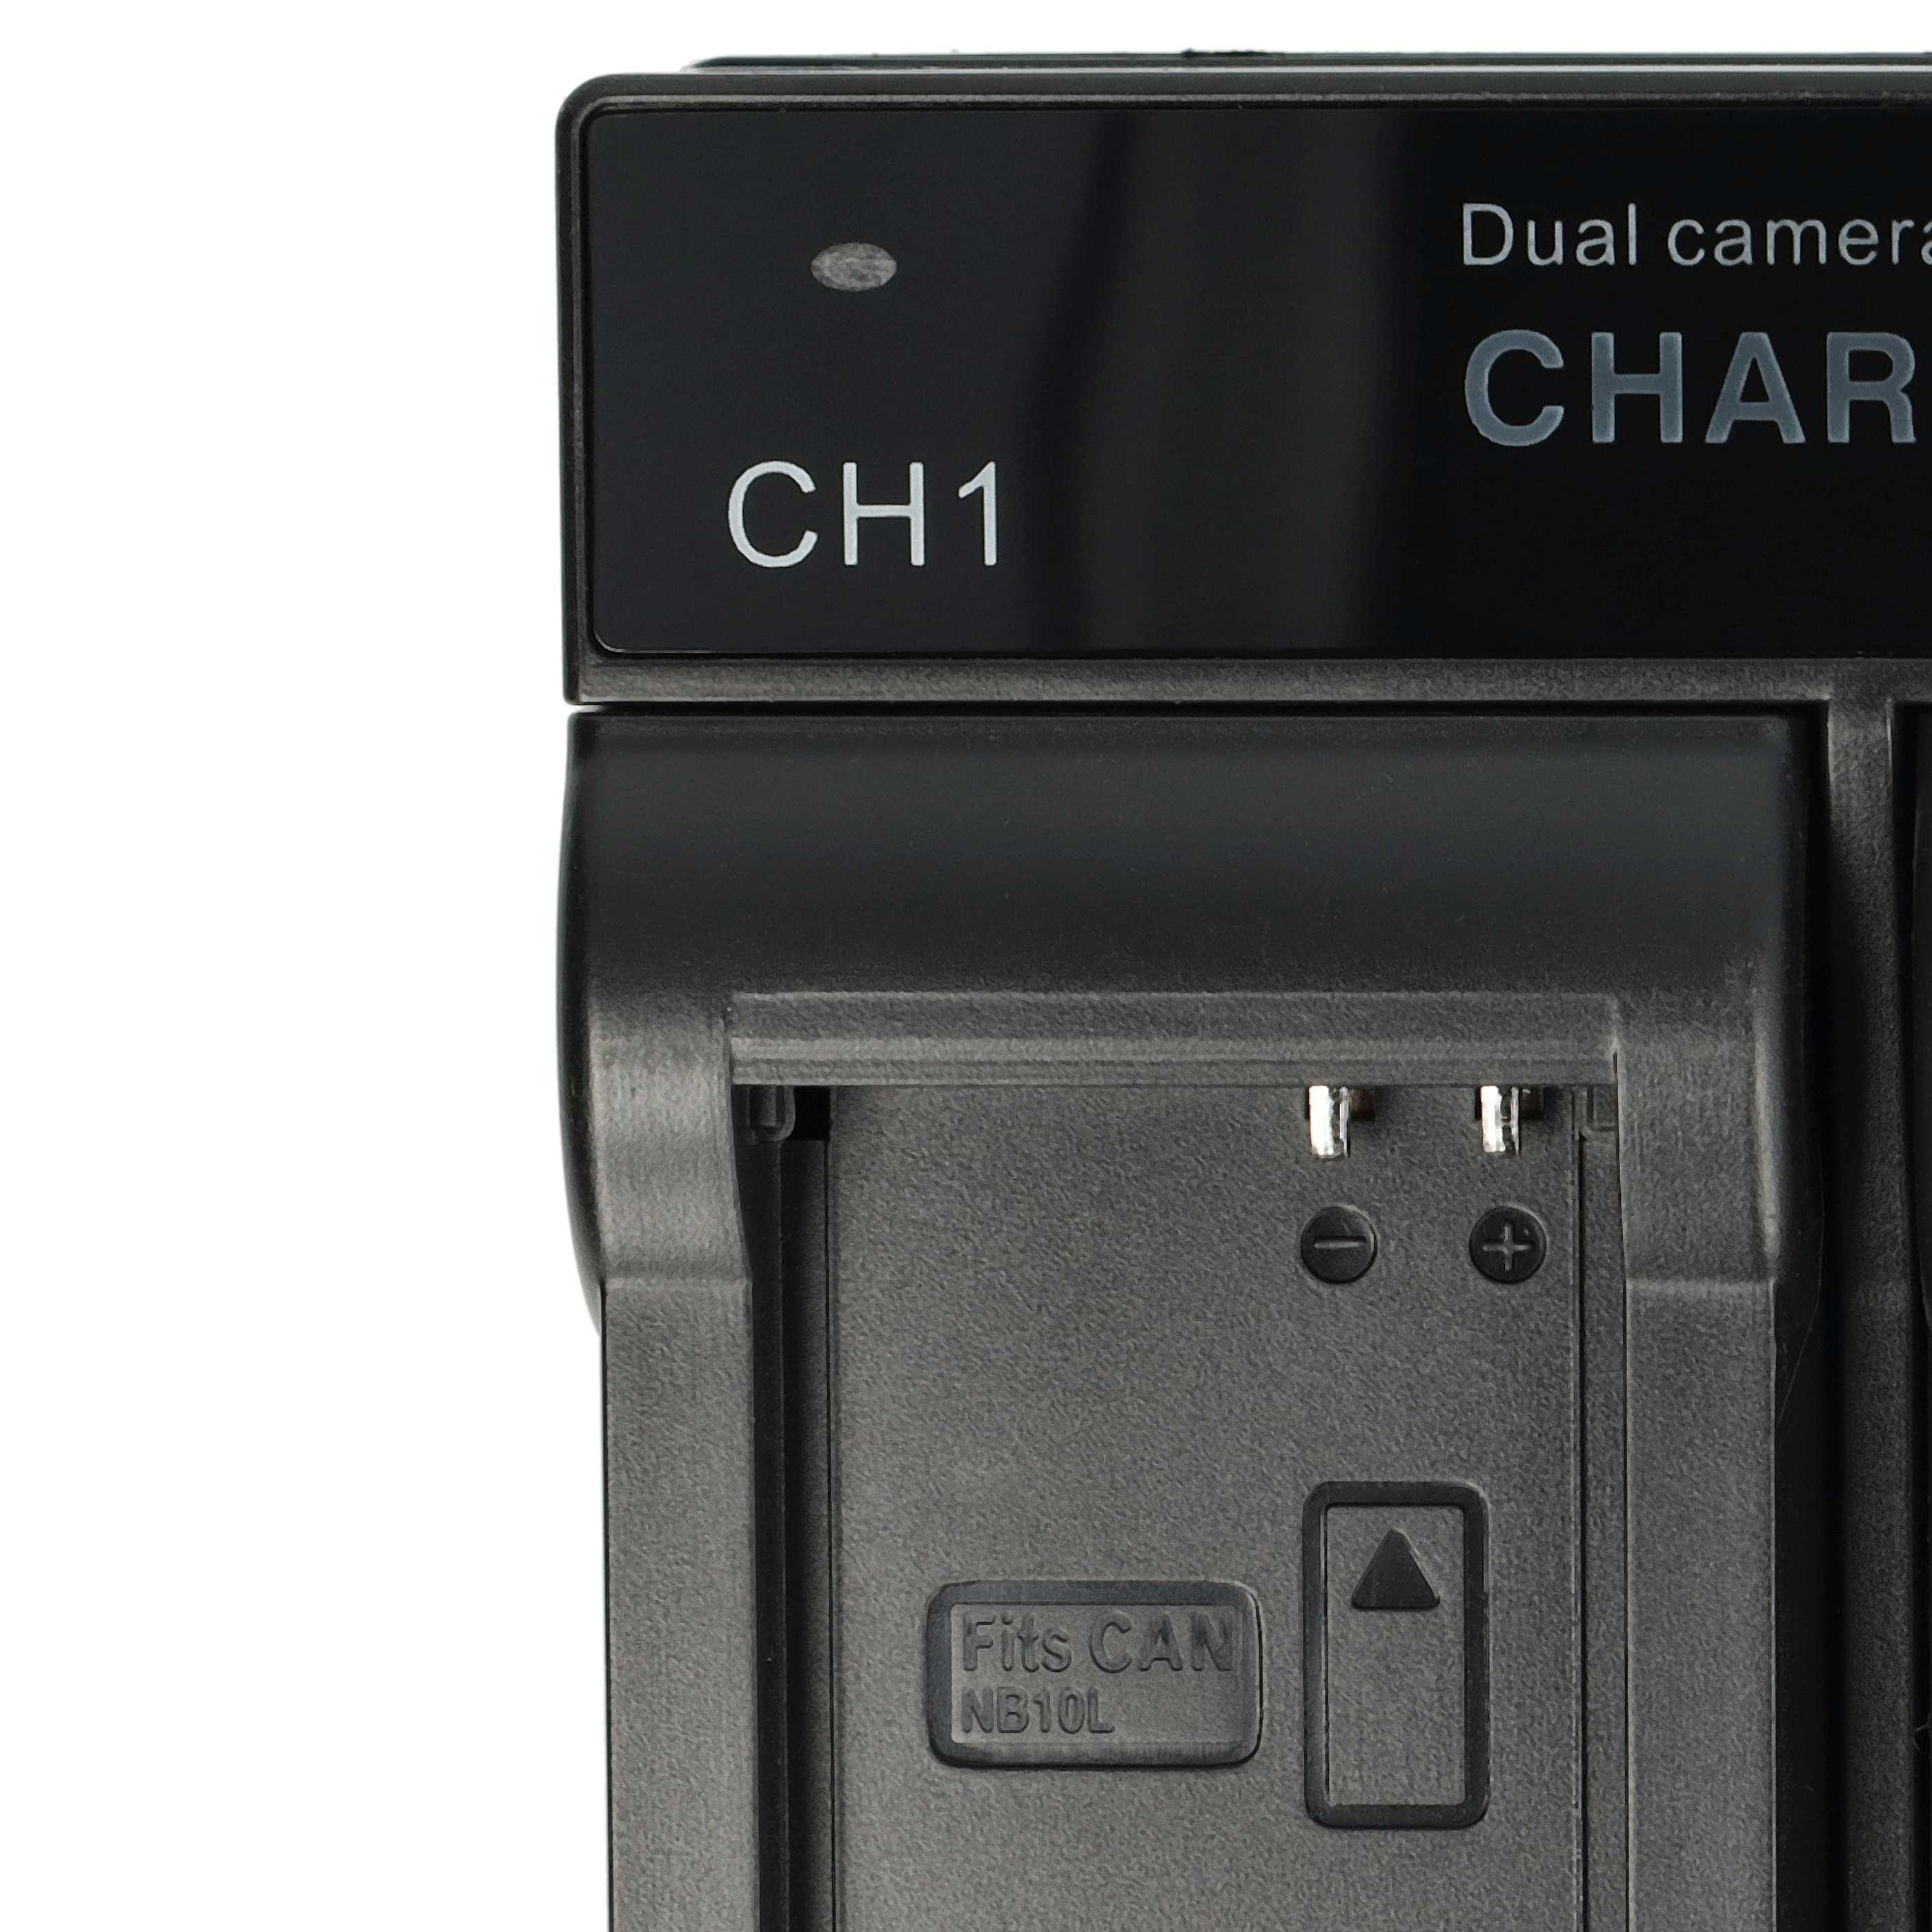 Caricabatterie per fotocamera Samsung - 0.5 / 0.9A 4.2/8.4V 114,5cm